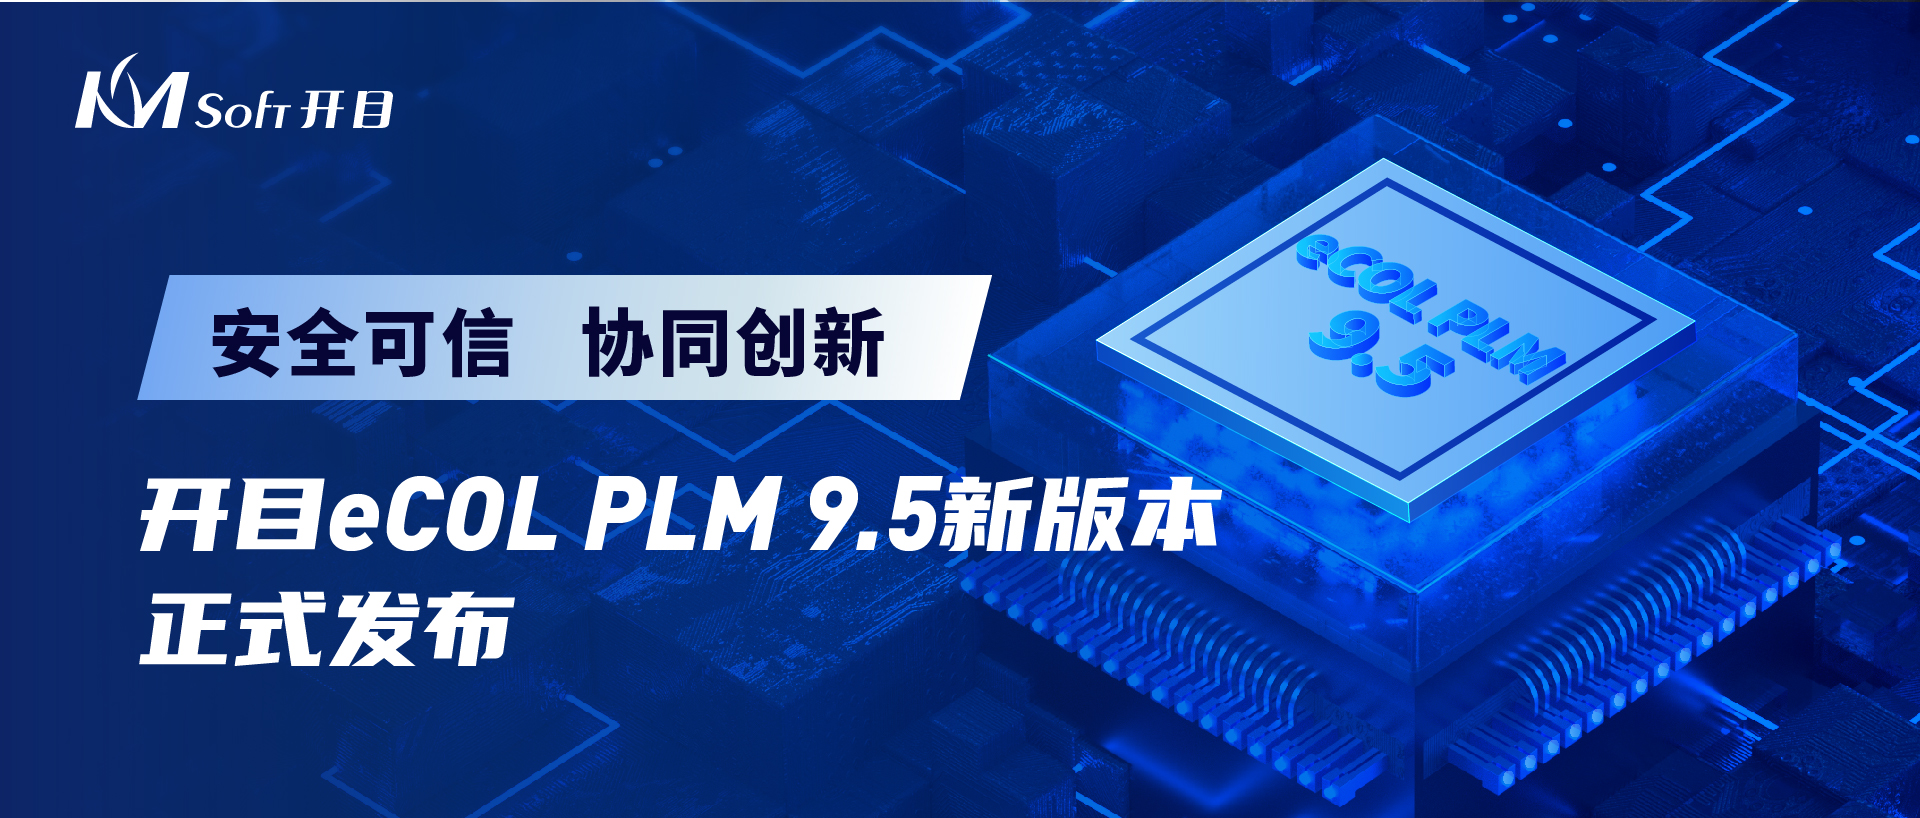 我司发布eCOL PLM 9.5 跨平台适配新版本，打造安全可信数字化研发解决方案